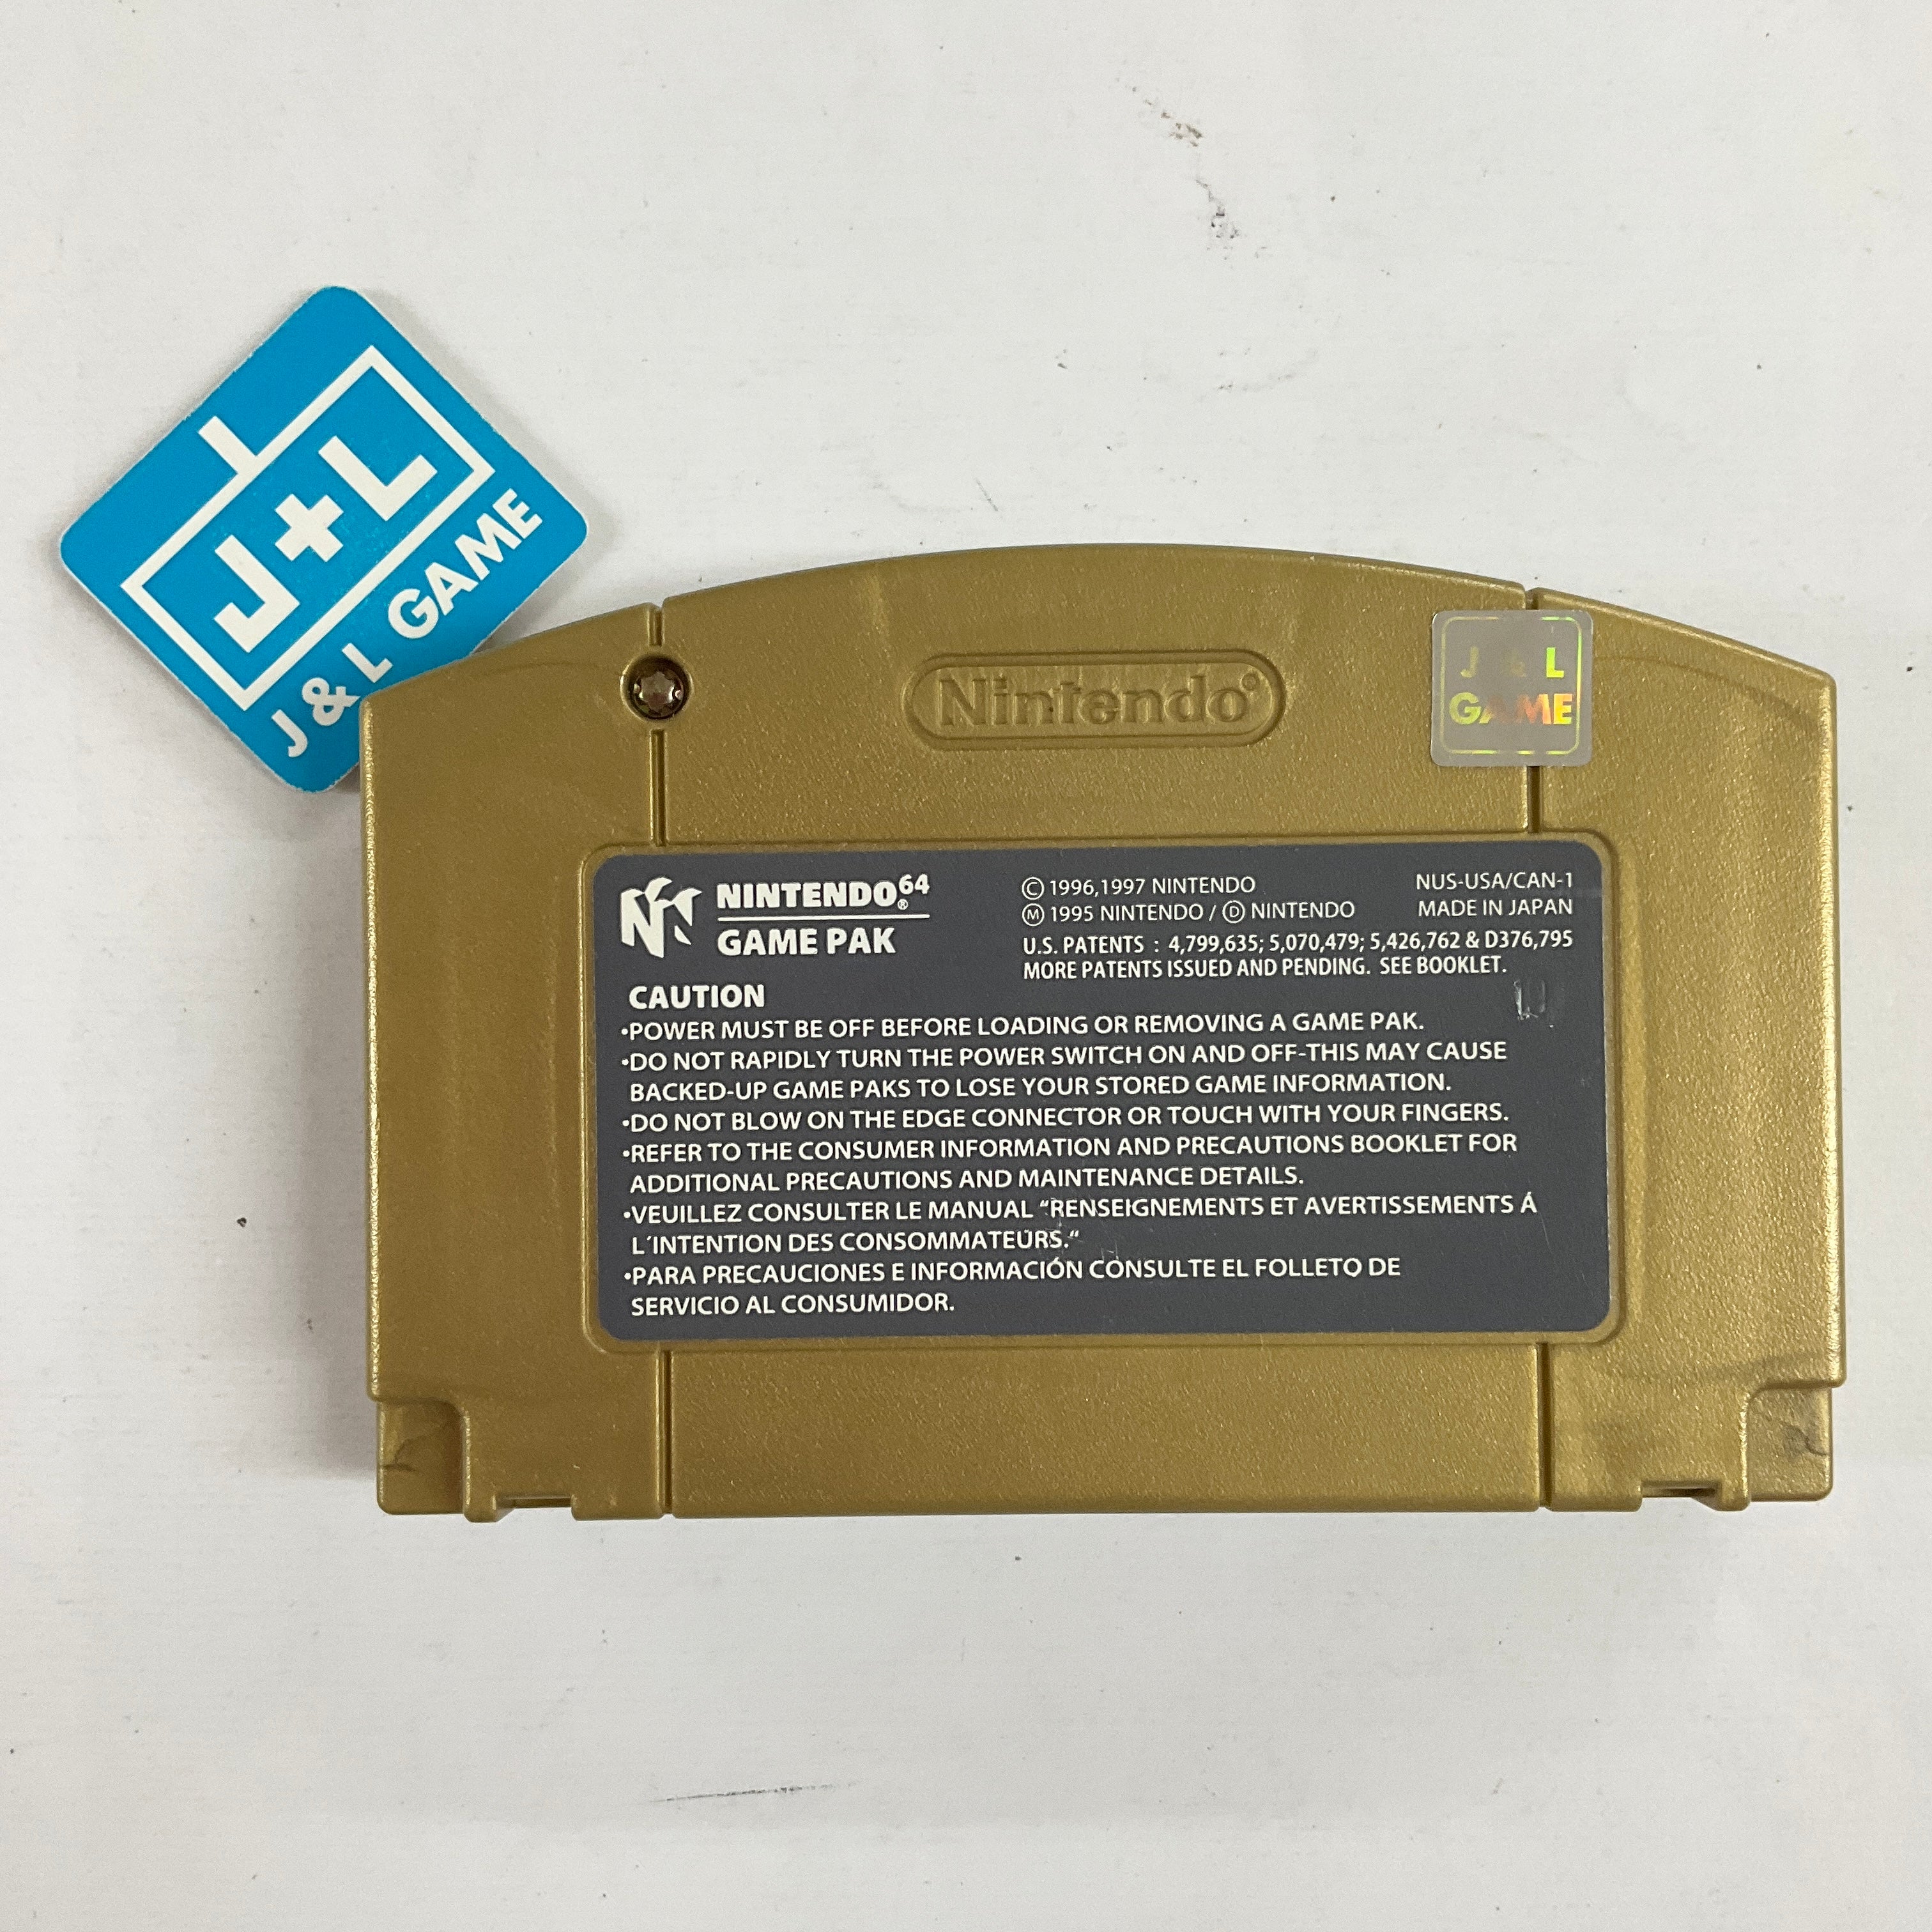 The Legend of Zelda: Majora's Mask Collector's Edition (Hologram 3D Label) - (N64) Nintendo 64 [Pre-Owned] Video Games Nintendo   